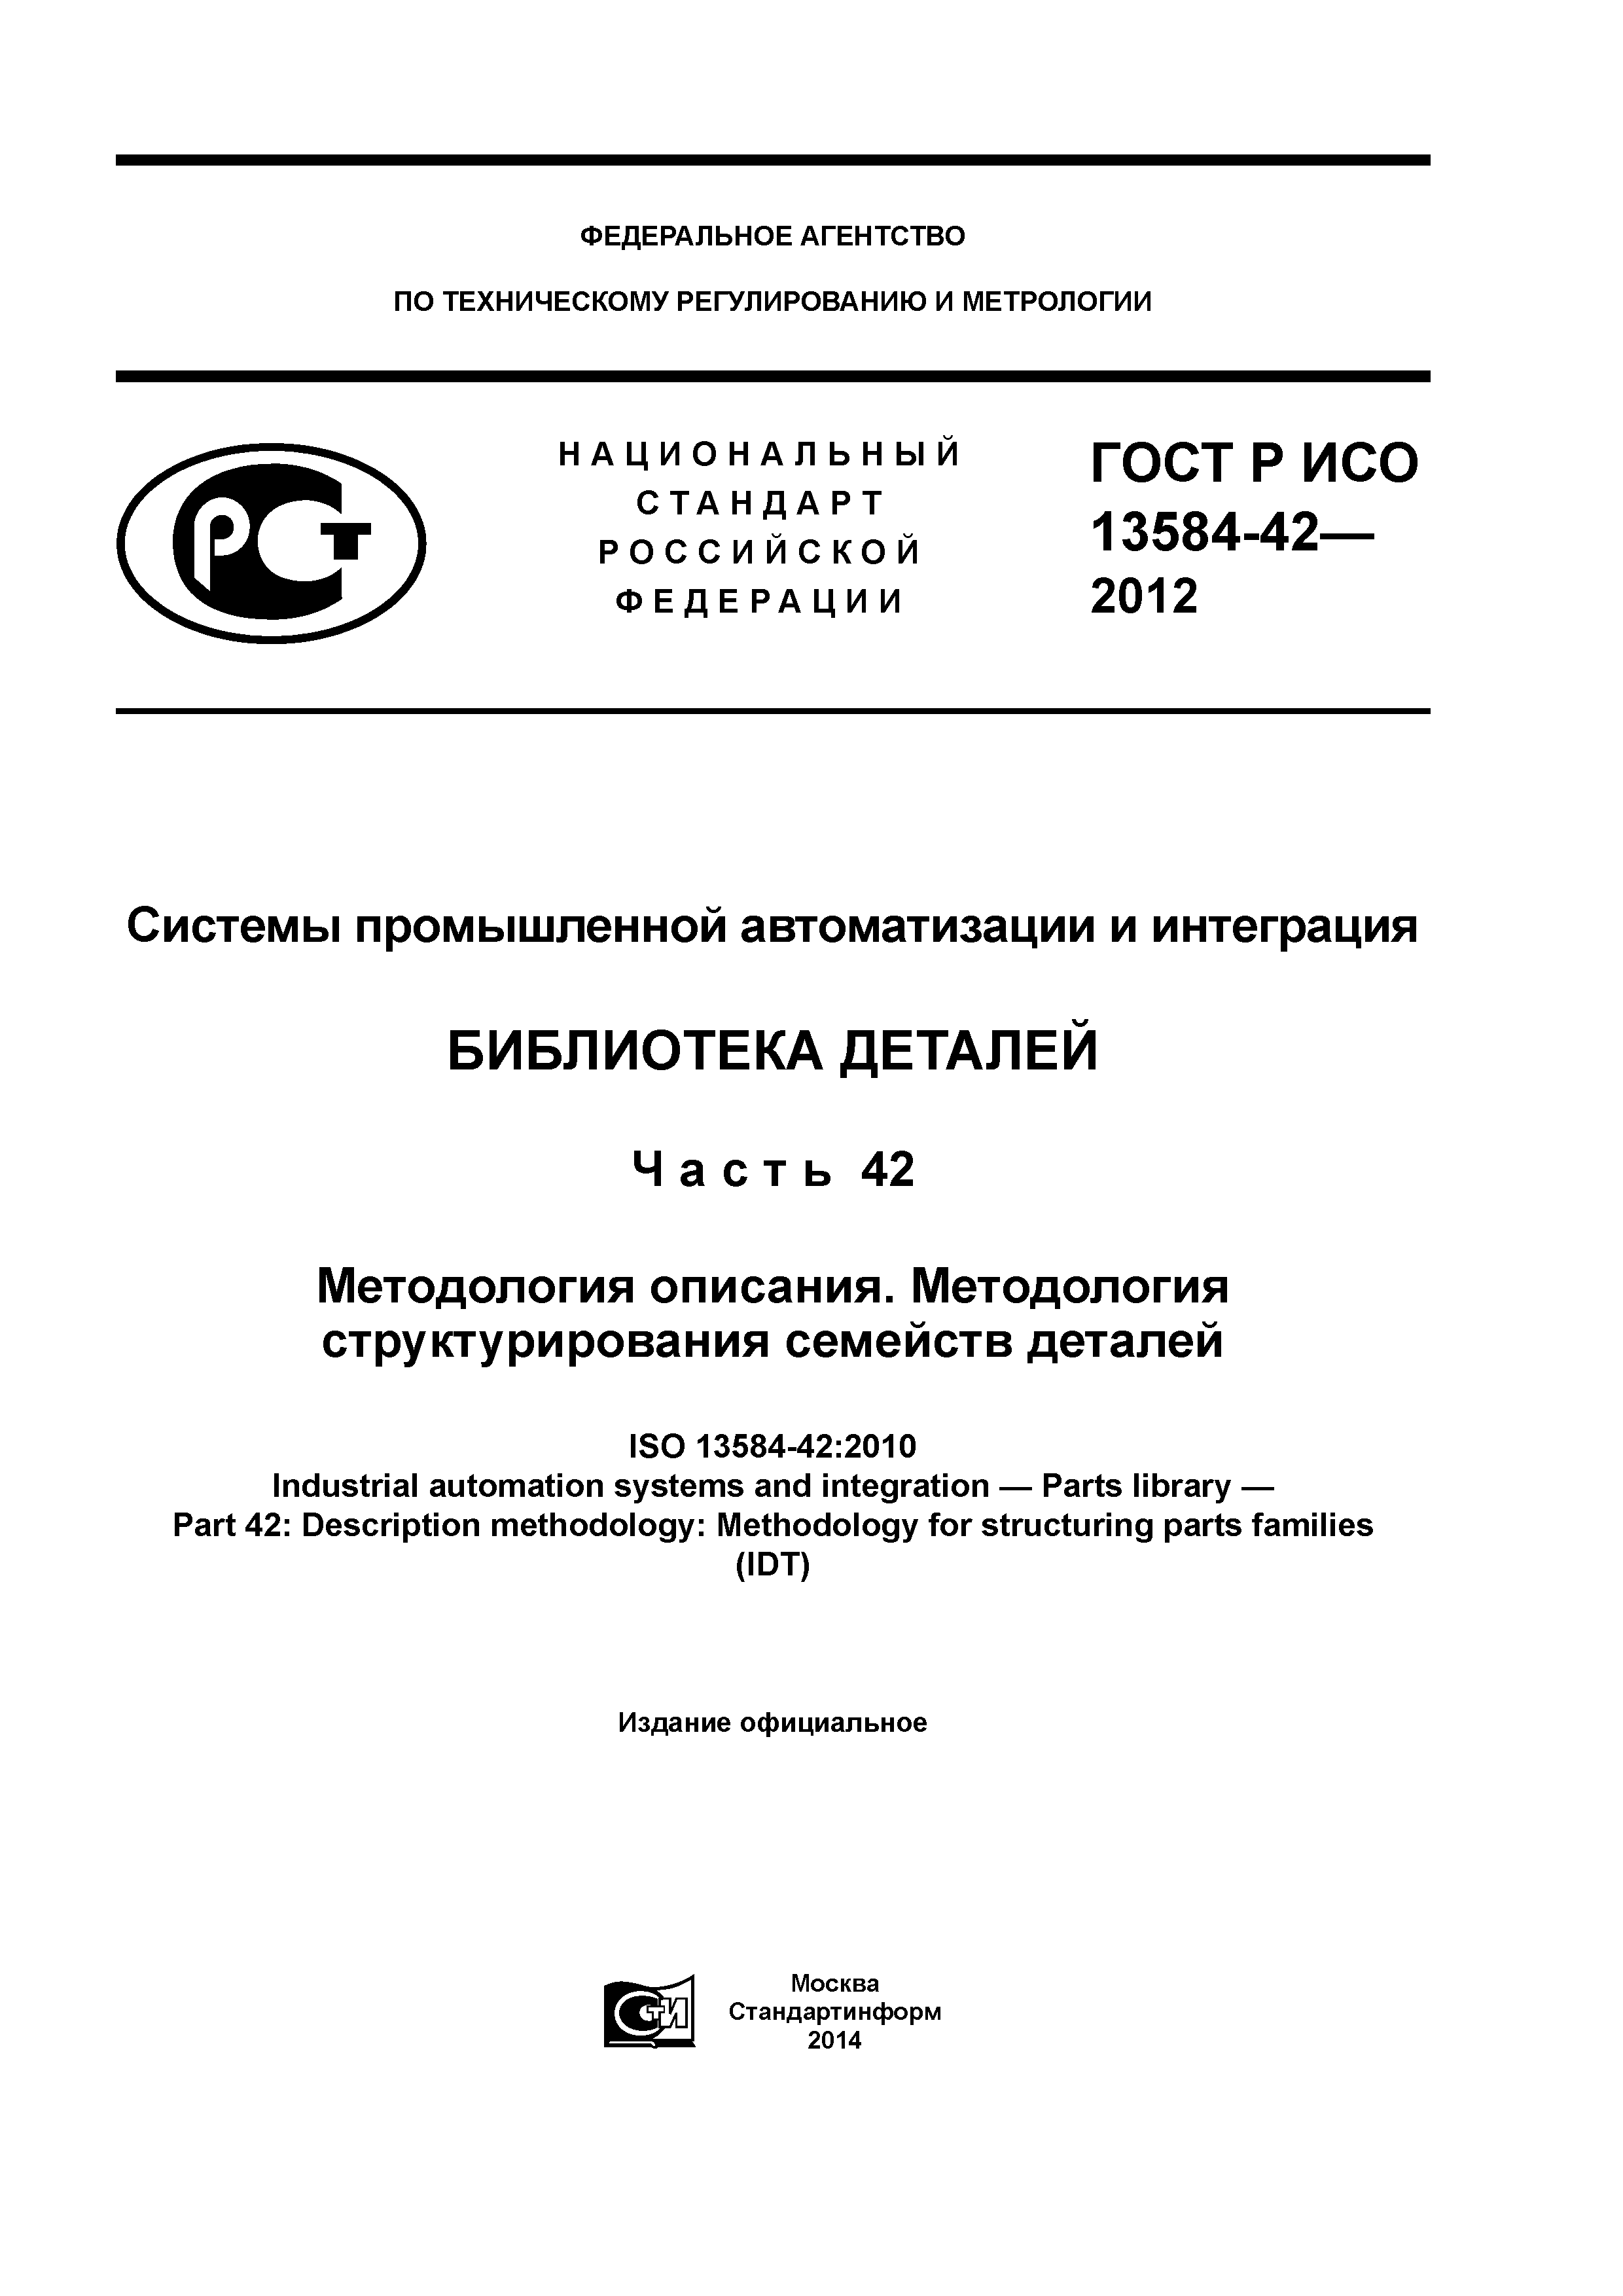 ГОСТ Р ИСО 13584-42-2012